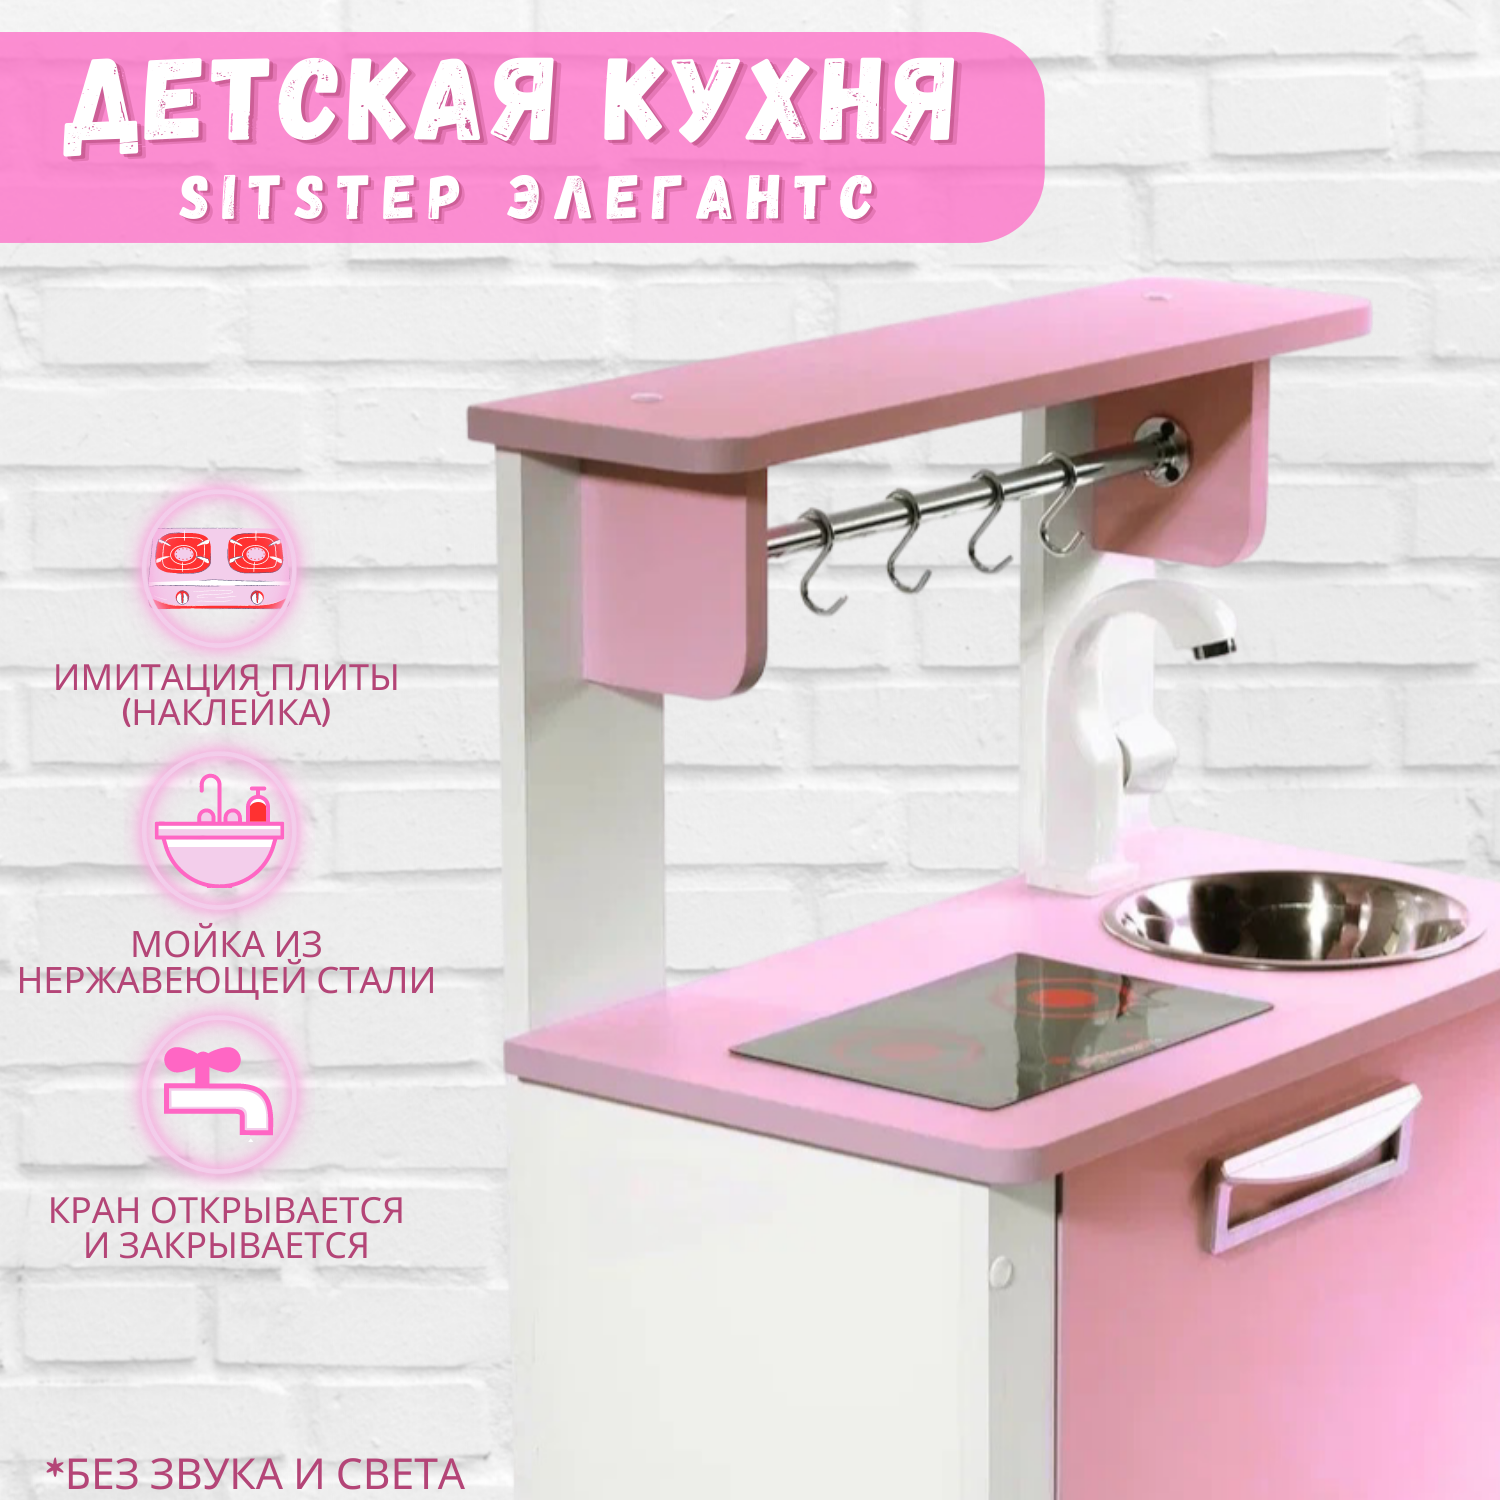 Детская кухня SITSTEP Элегантс с имитацией плиты наклейкой белый корпус, розовые фасады